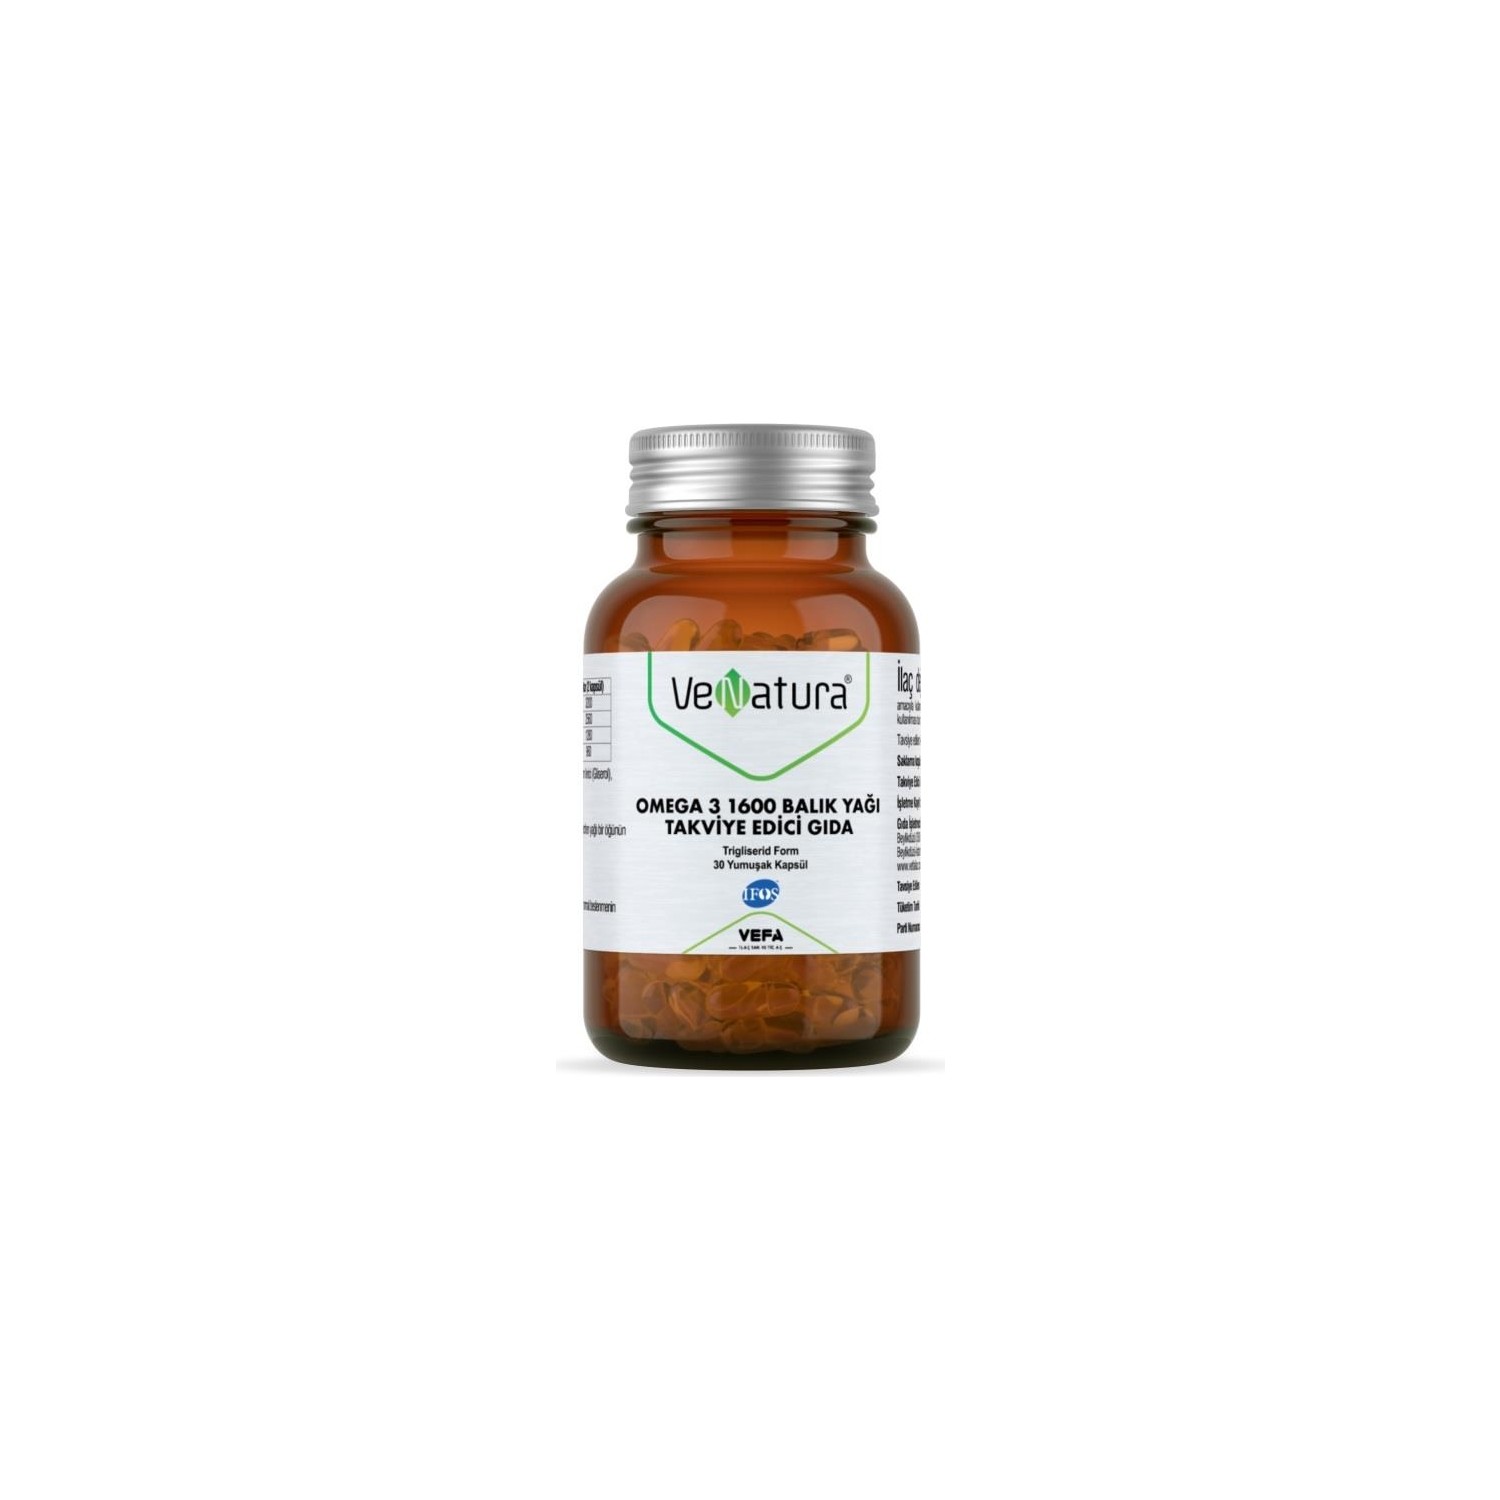 Омега-3 Venatura, 1600 мг, 30 капсул omega 3 fish oil extract 100 soft capsules 1380 mg